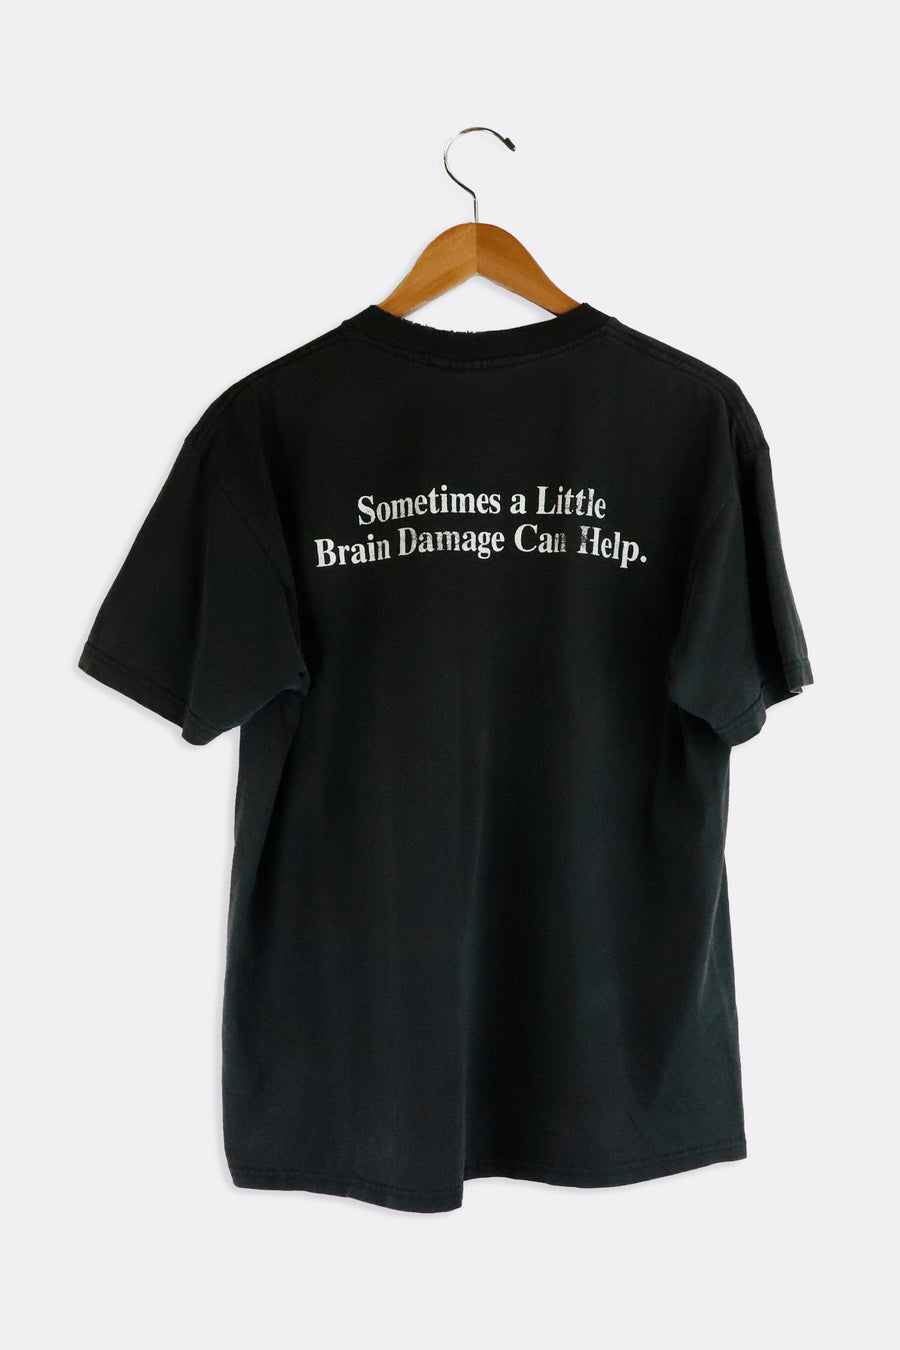 Vintage George Carlin T Shirt Sz L